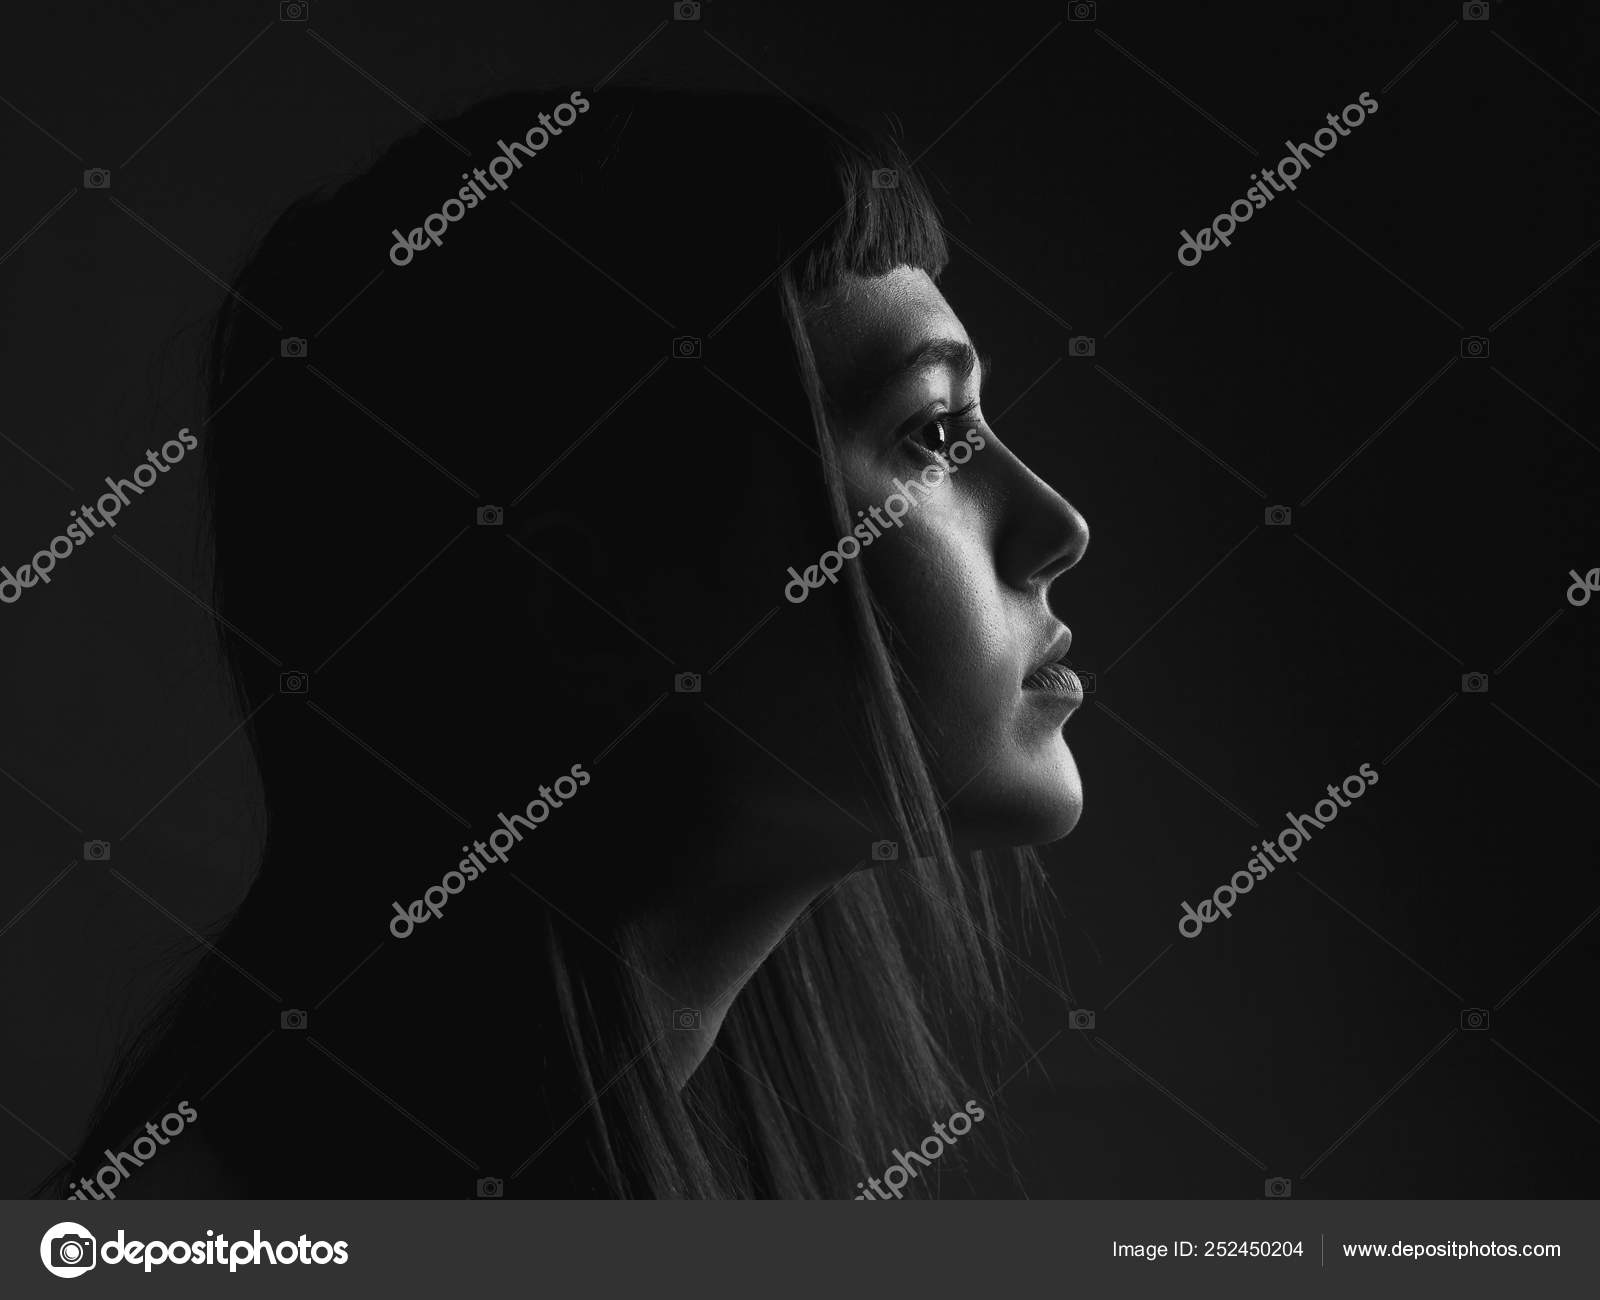 Retrato preto e branco no perfil de uma jovem pensativa, triste e